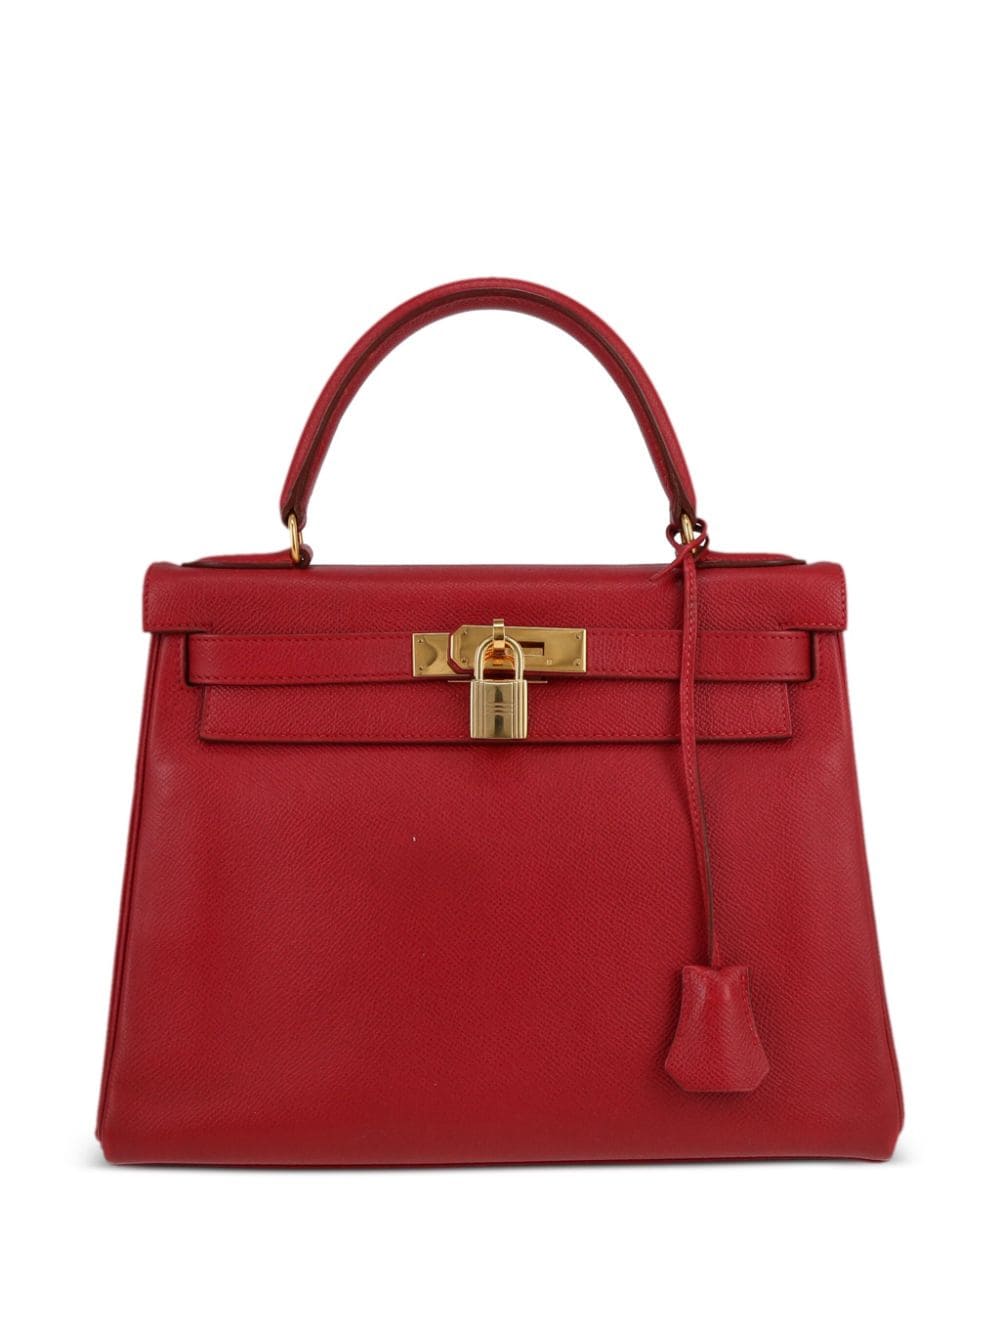 Hermès Pre-Owned 1994 Kelly 28 two-way handbag - Red von Hermès Pre-Owned